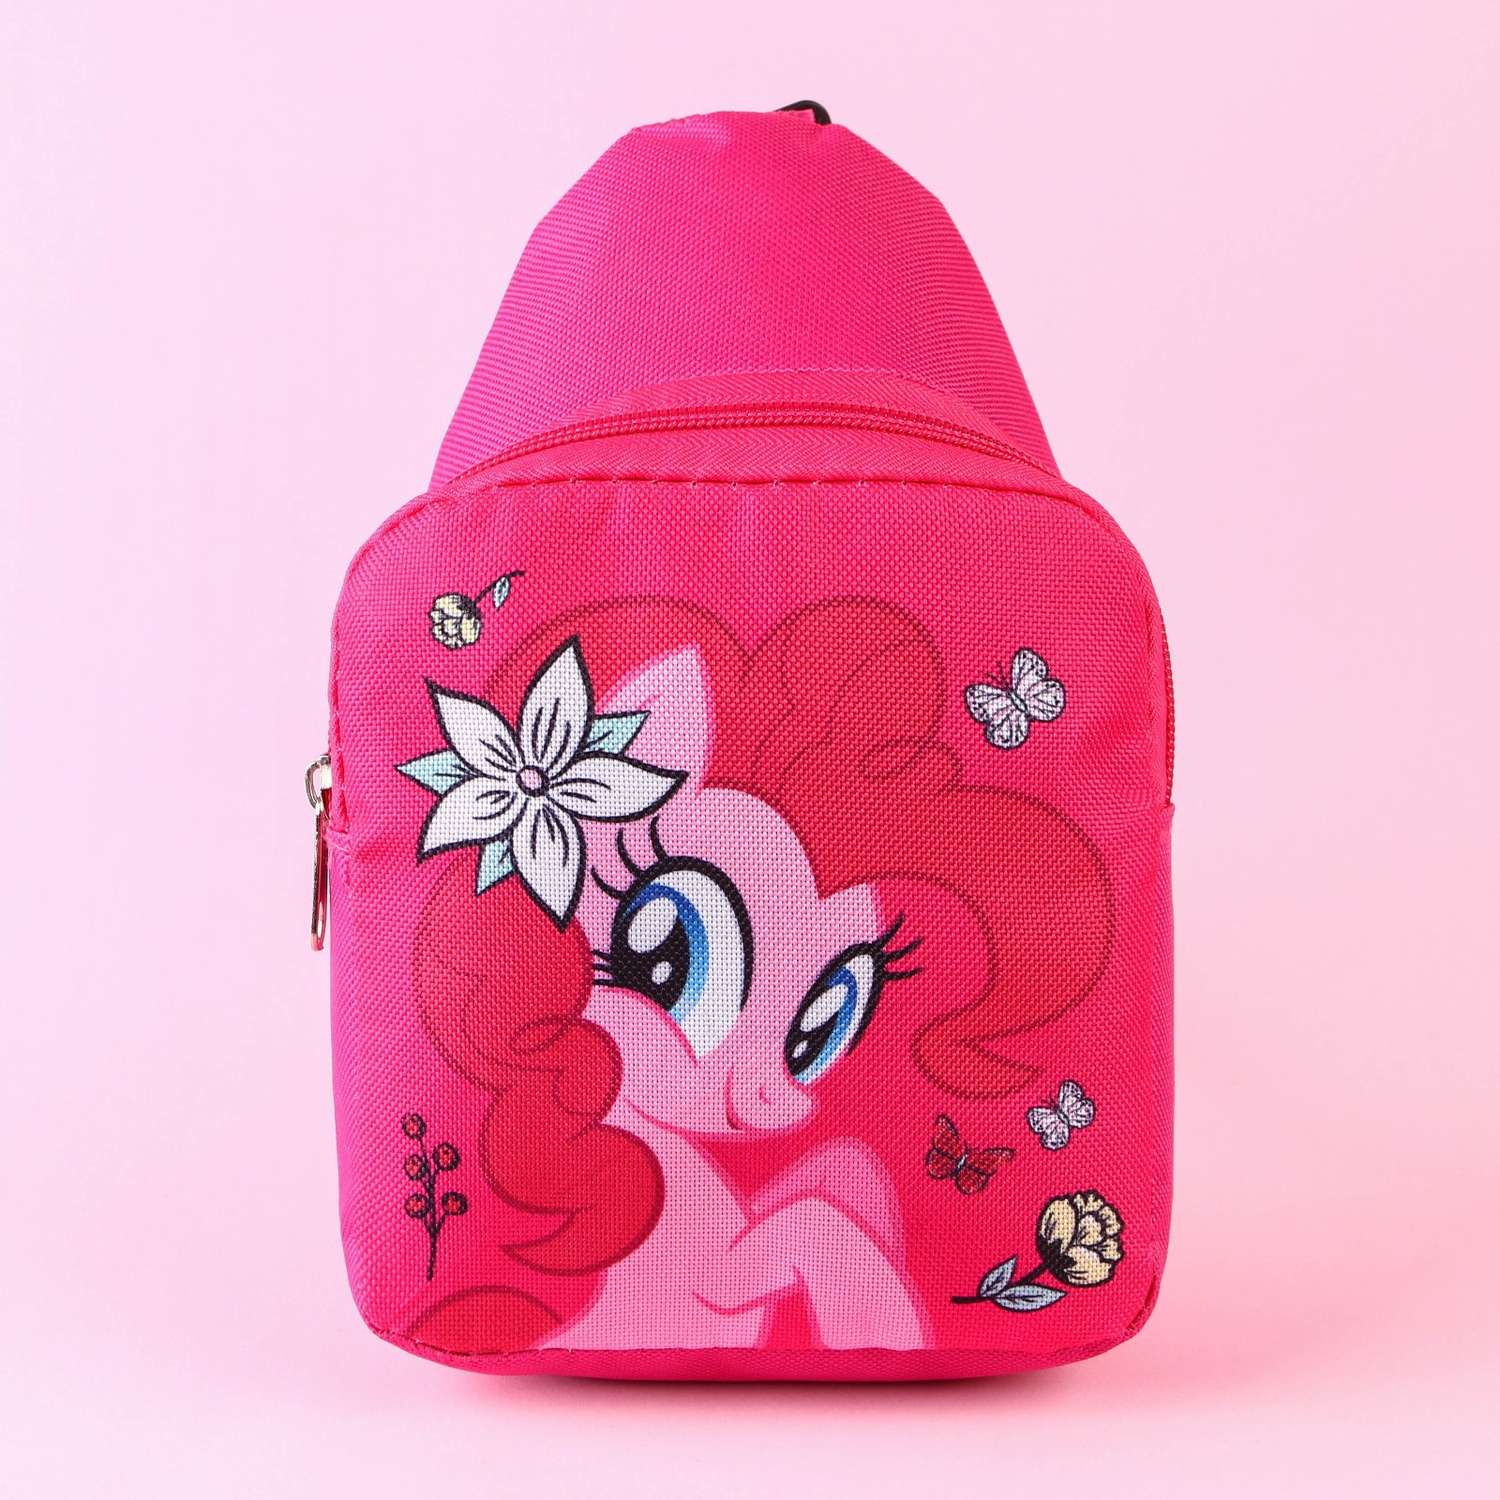 Сумка Hasbro на плечо My Little Pony - фото 2